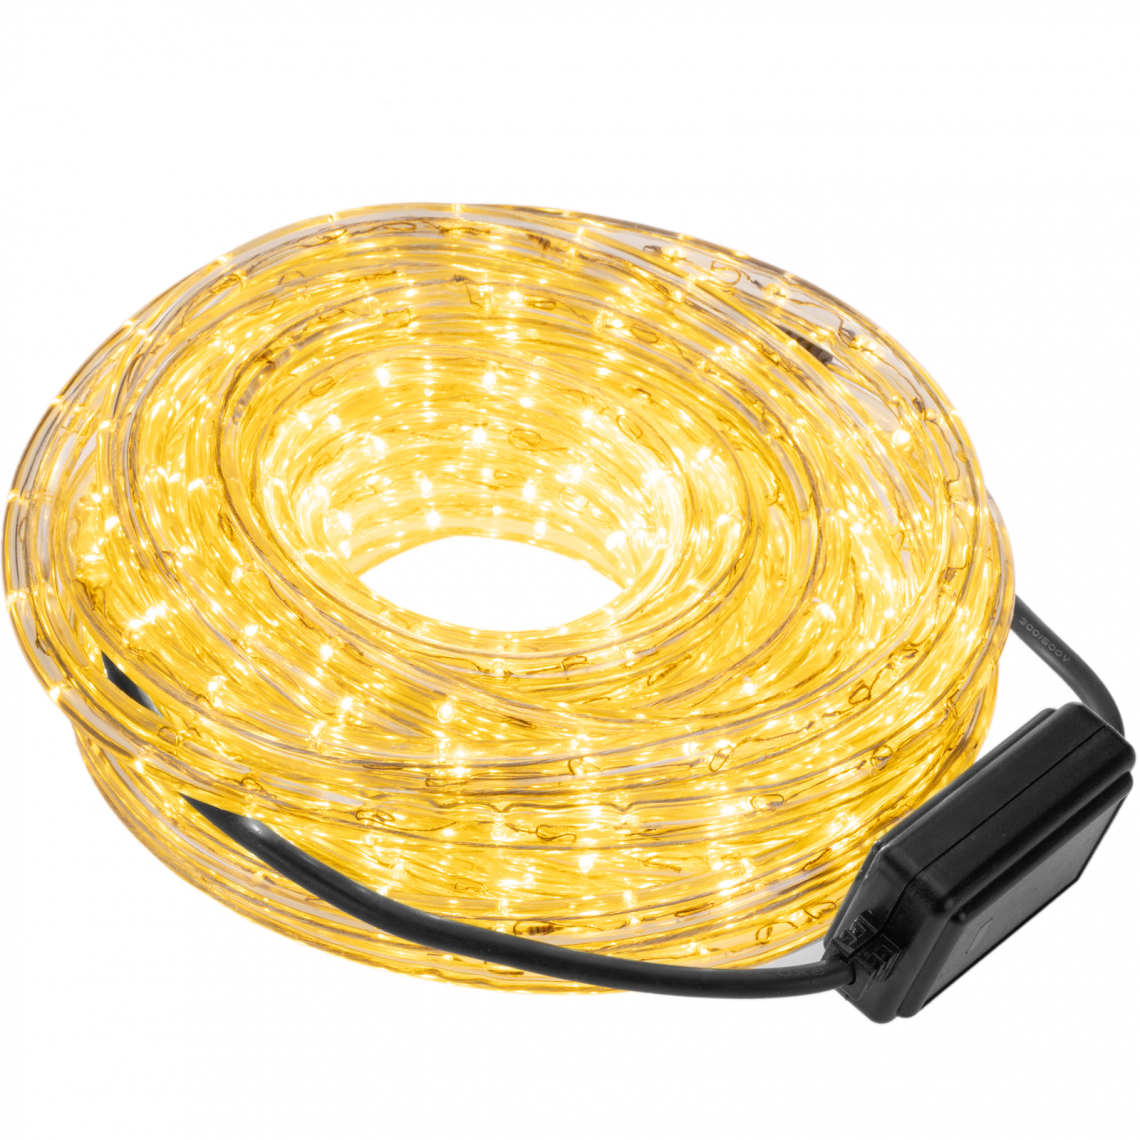 Primematik - Guirlande lumineuse à LED blanches de 10 m avec 8 effets lumineux, recouverte de PVC et adaptée à une utilisation en extérieur 2 - Ruban LED